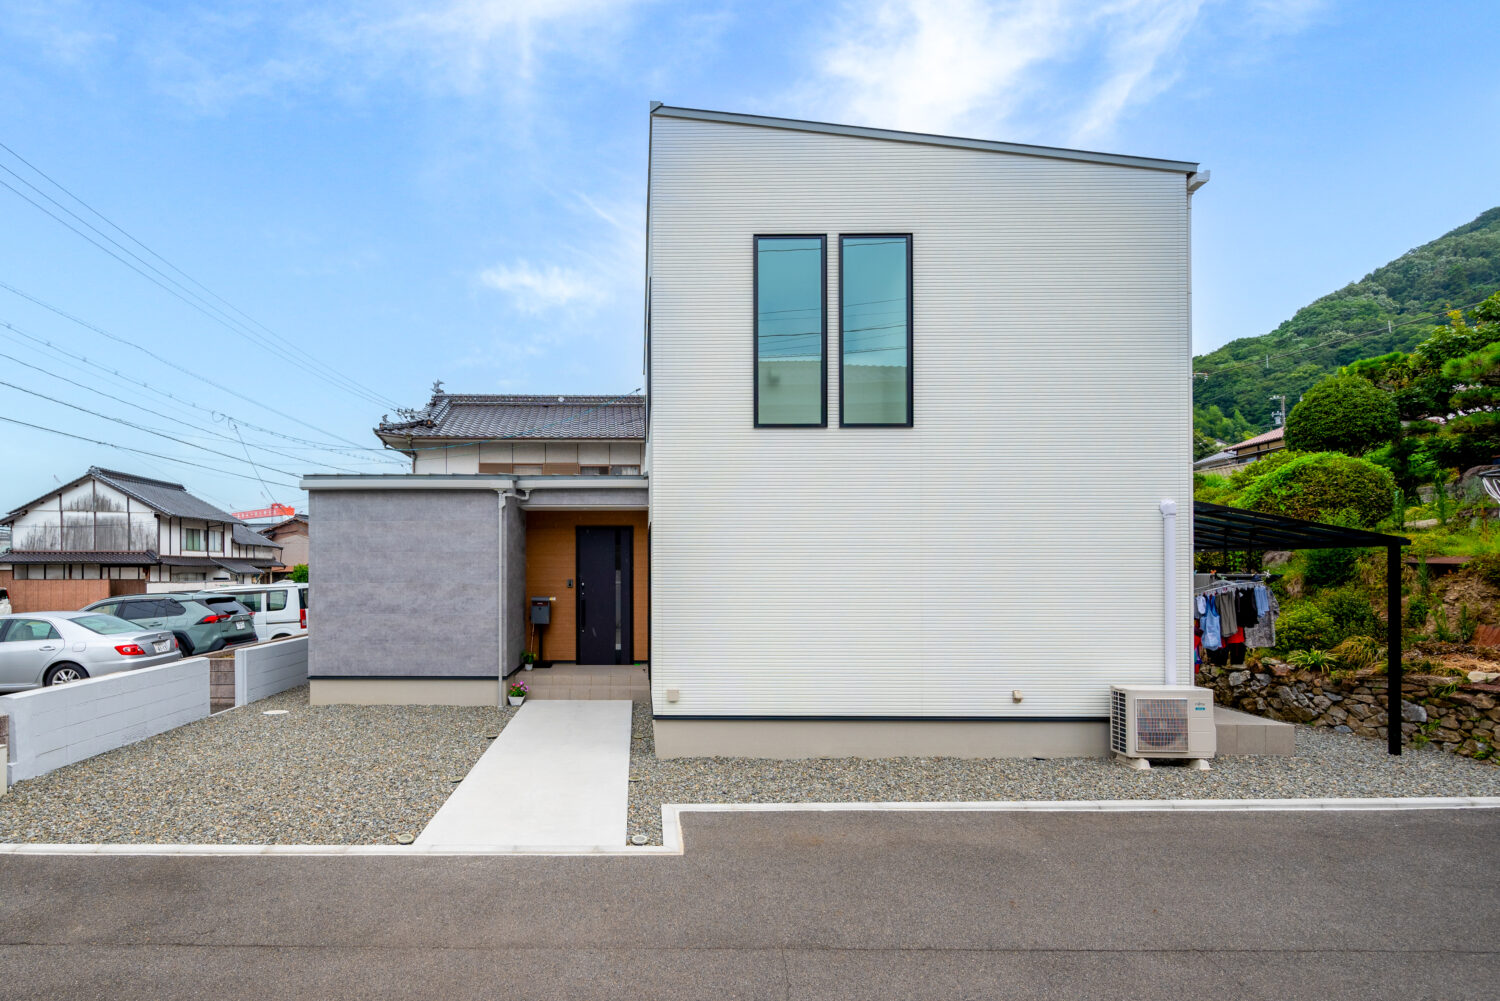 アイデザインホーム
注文住宅
広島県三原市
鋳物をイメージしたテクスチャーと細かなストライプ意匠が特徴のホワイトの外壁は、コンクリート調のグレーの外壁と相性抜群